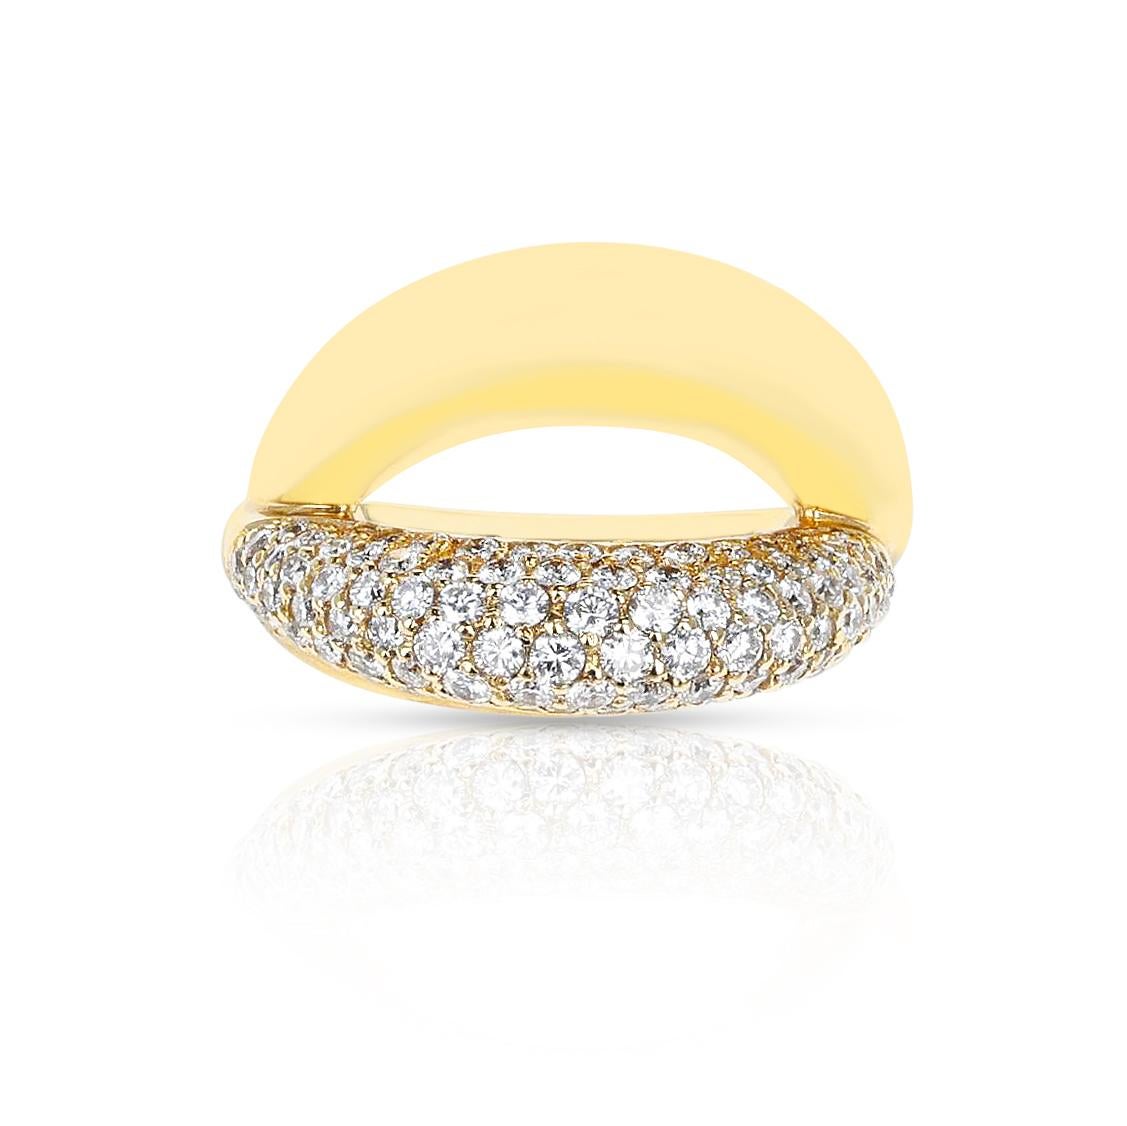 Ein Crossover Mauboussin Diamantring aus 18 Karat Gelbgold.  Das Gewicht des Diamanten beträgt 1,40 Karat. Das Gesamtgewicht des Rings beträgt 11,40 Gramm. Die folgenden Ringgrößen sind in US-Größen erhältlich: 4.50, 5, 5.50, 5.75.